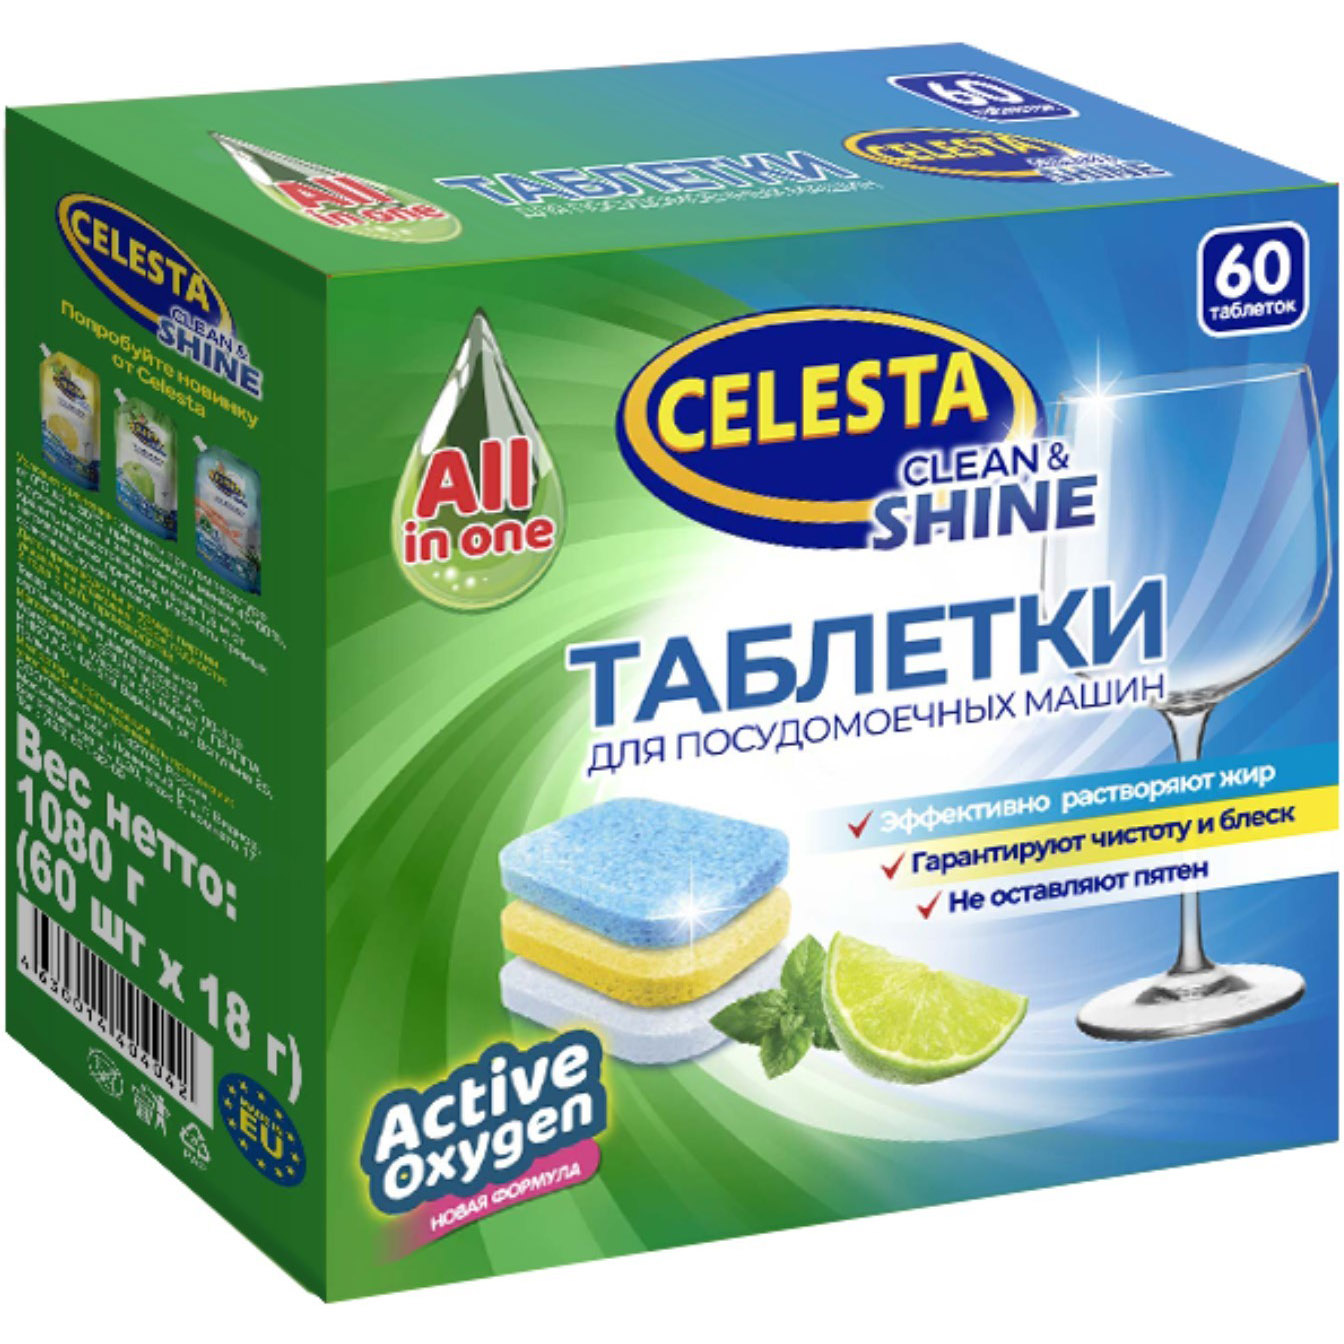 Таблетки для посудомоечных машин Celesta Clean & shine Трехслойные 60 шт bioretto соль для посудомоечных машин в гранулах 2000